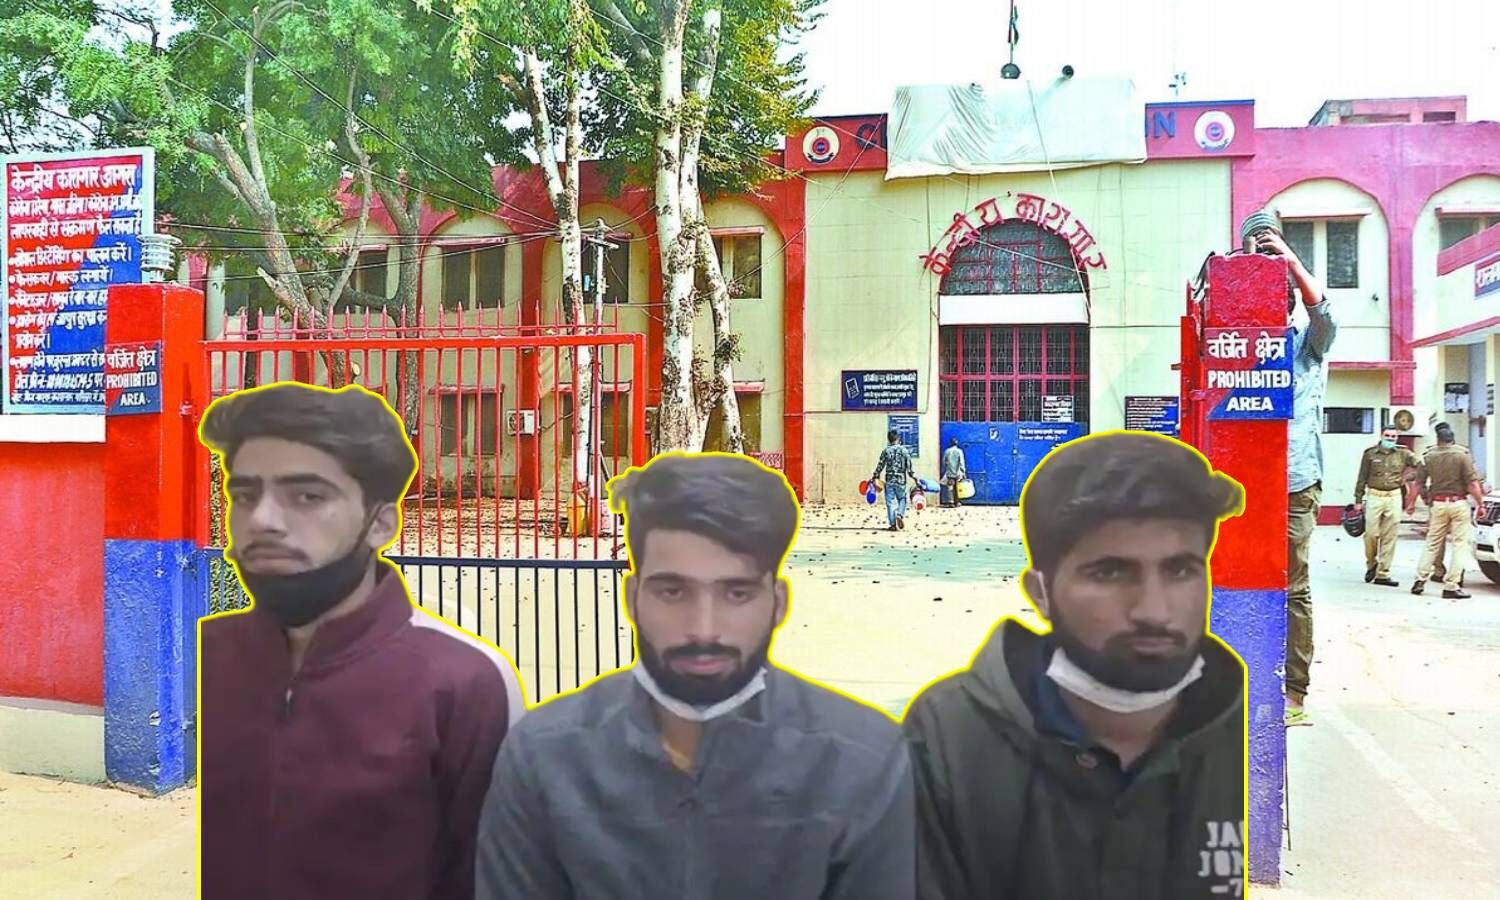 Uttar Pradesh News : हाईकोर्ट से तीन हफ्ते पहले जमानत मिली, पर आगरा जेल से अब तक  रिहा नहीं हुए जम्मू कश्मीर के तीन इंजीनियरिंग छात्र